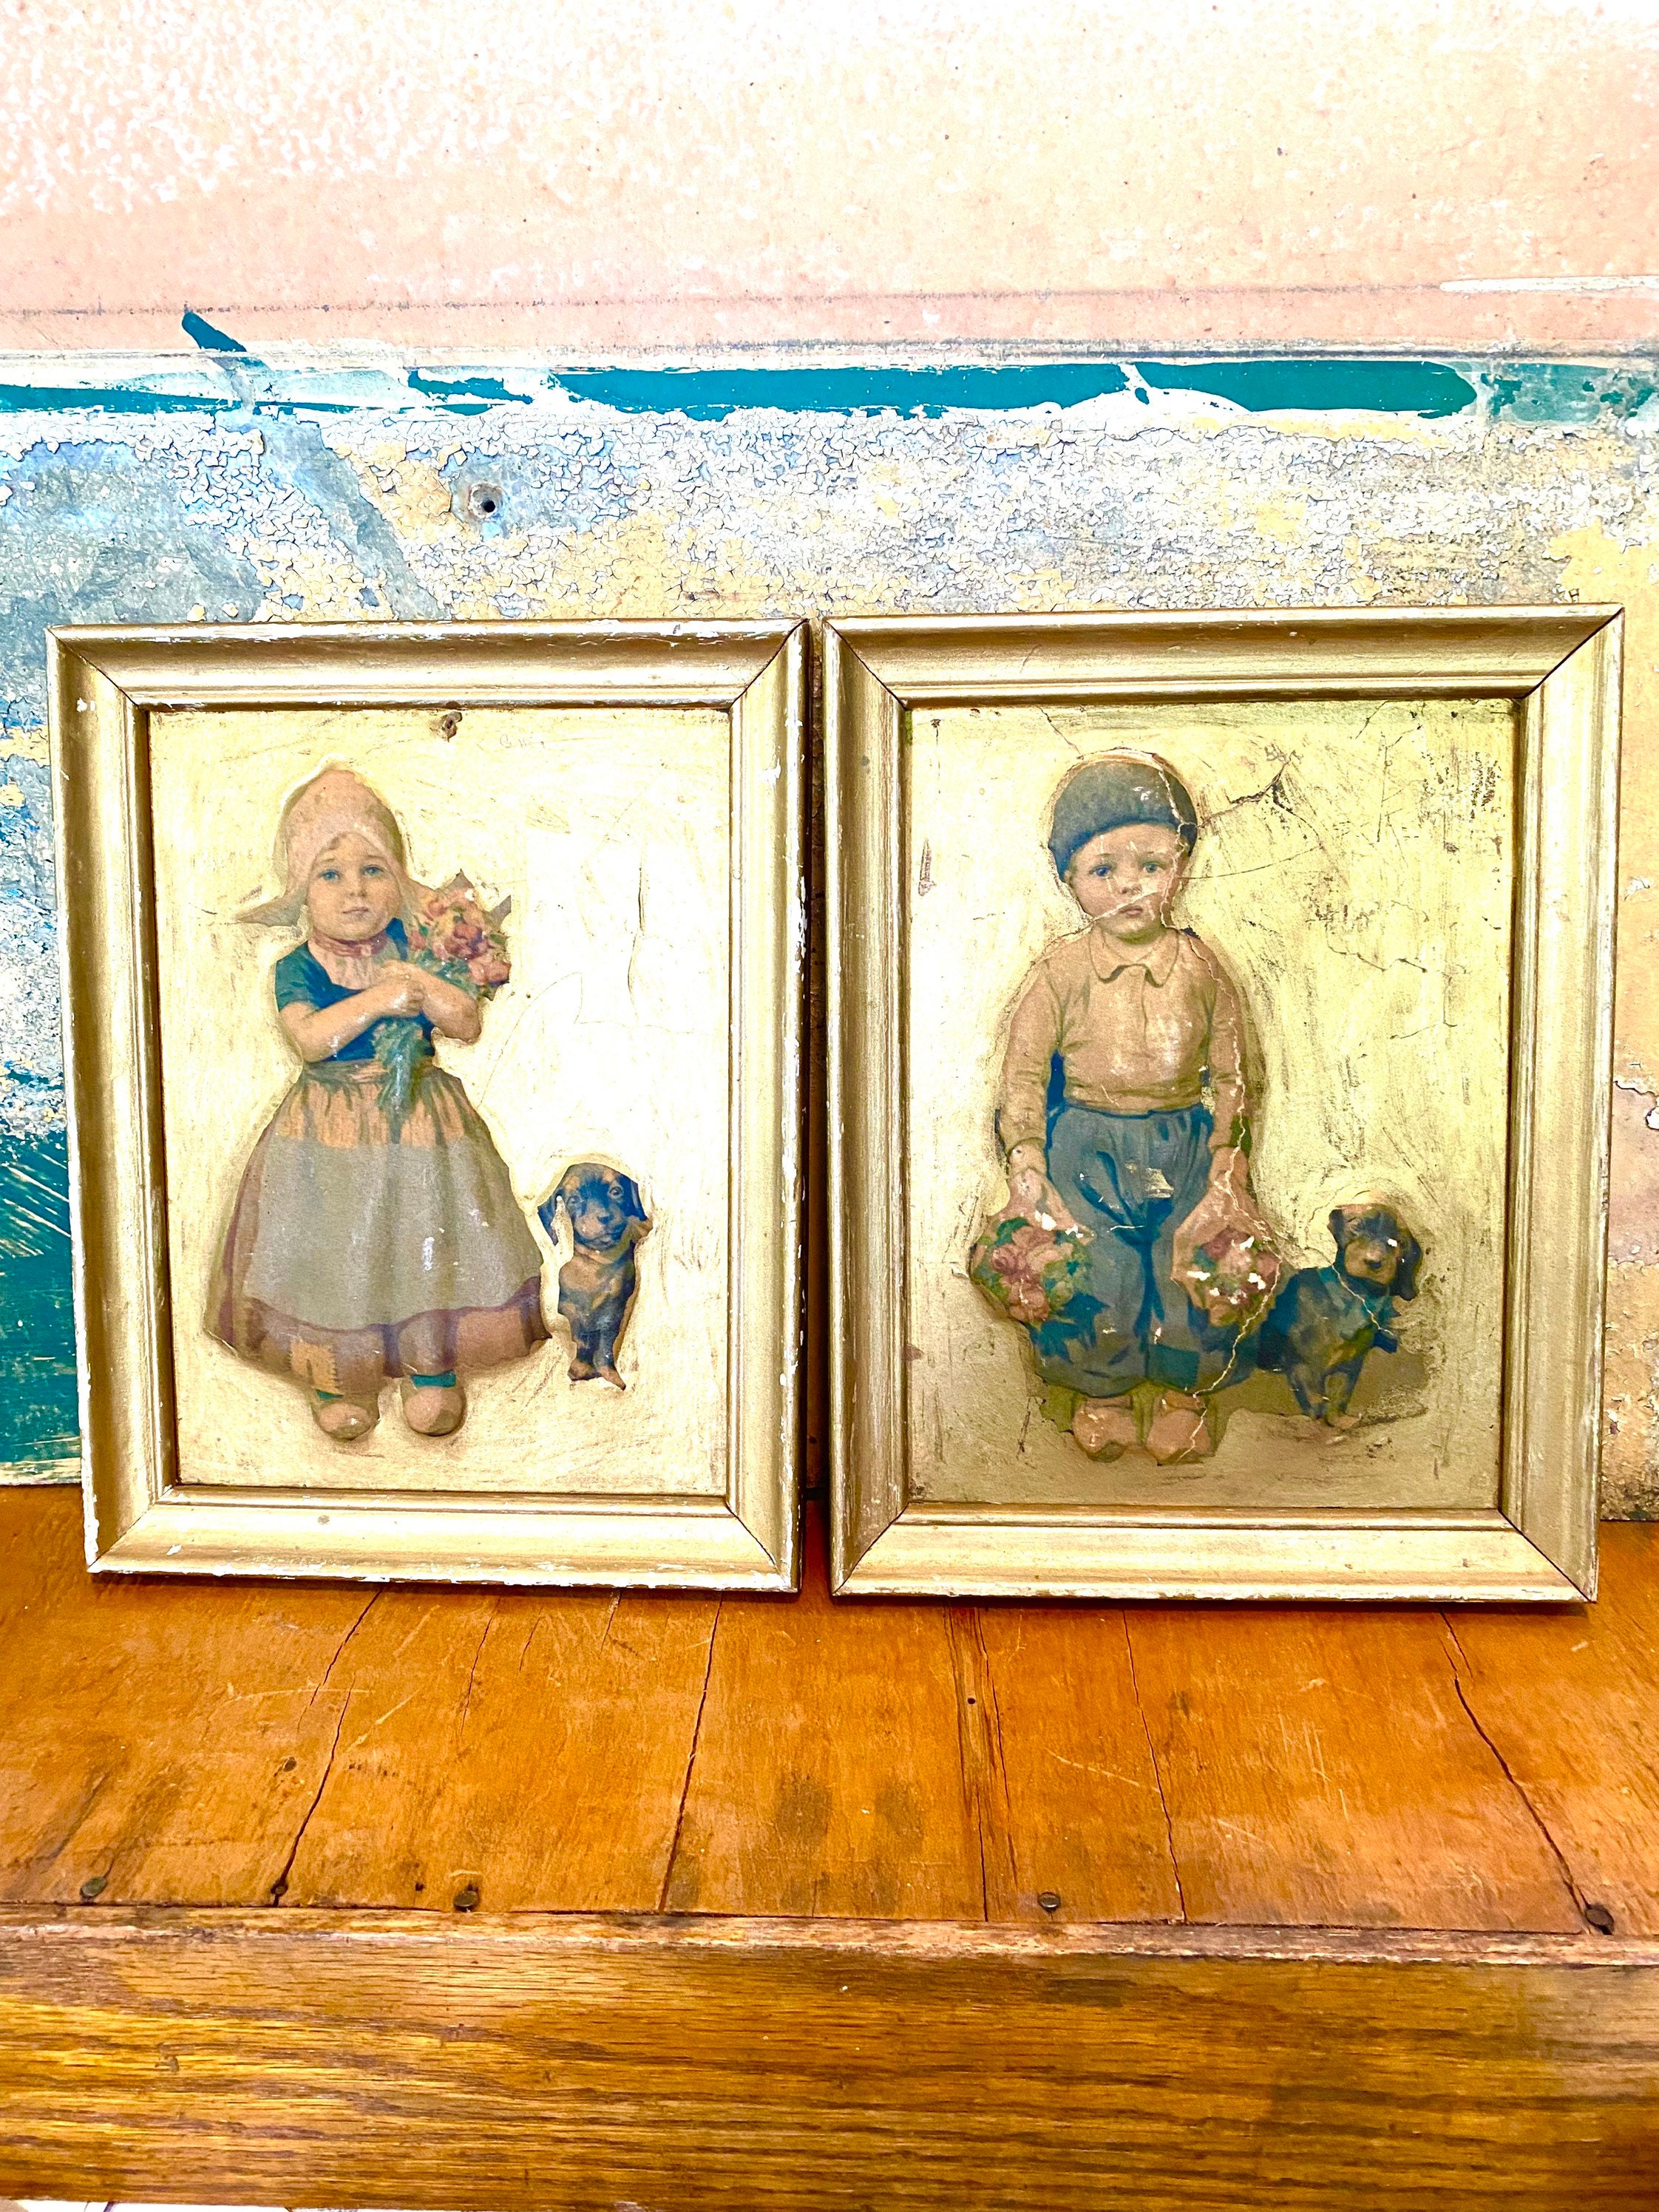 European antique old Dutch little boy/little girl figure painting (a set of  two) - Shop Antique Aunt Vintage Shop Posters - Pinkoi